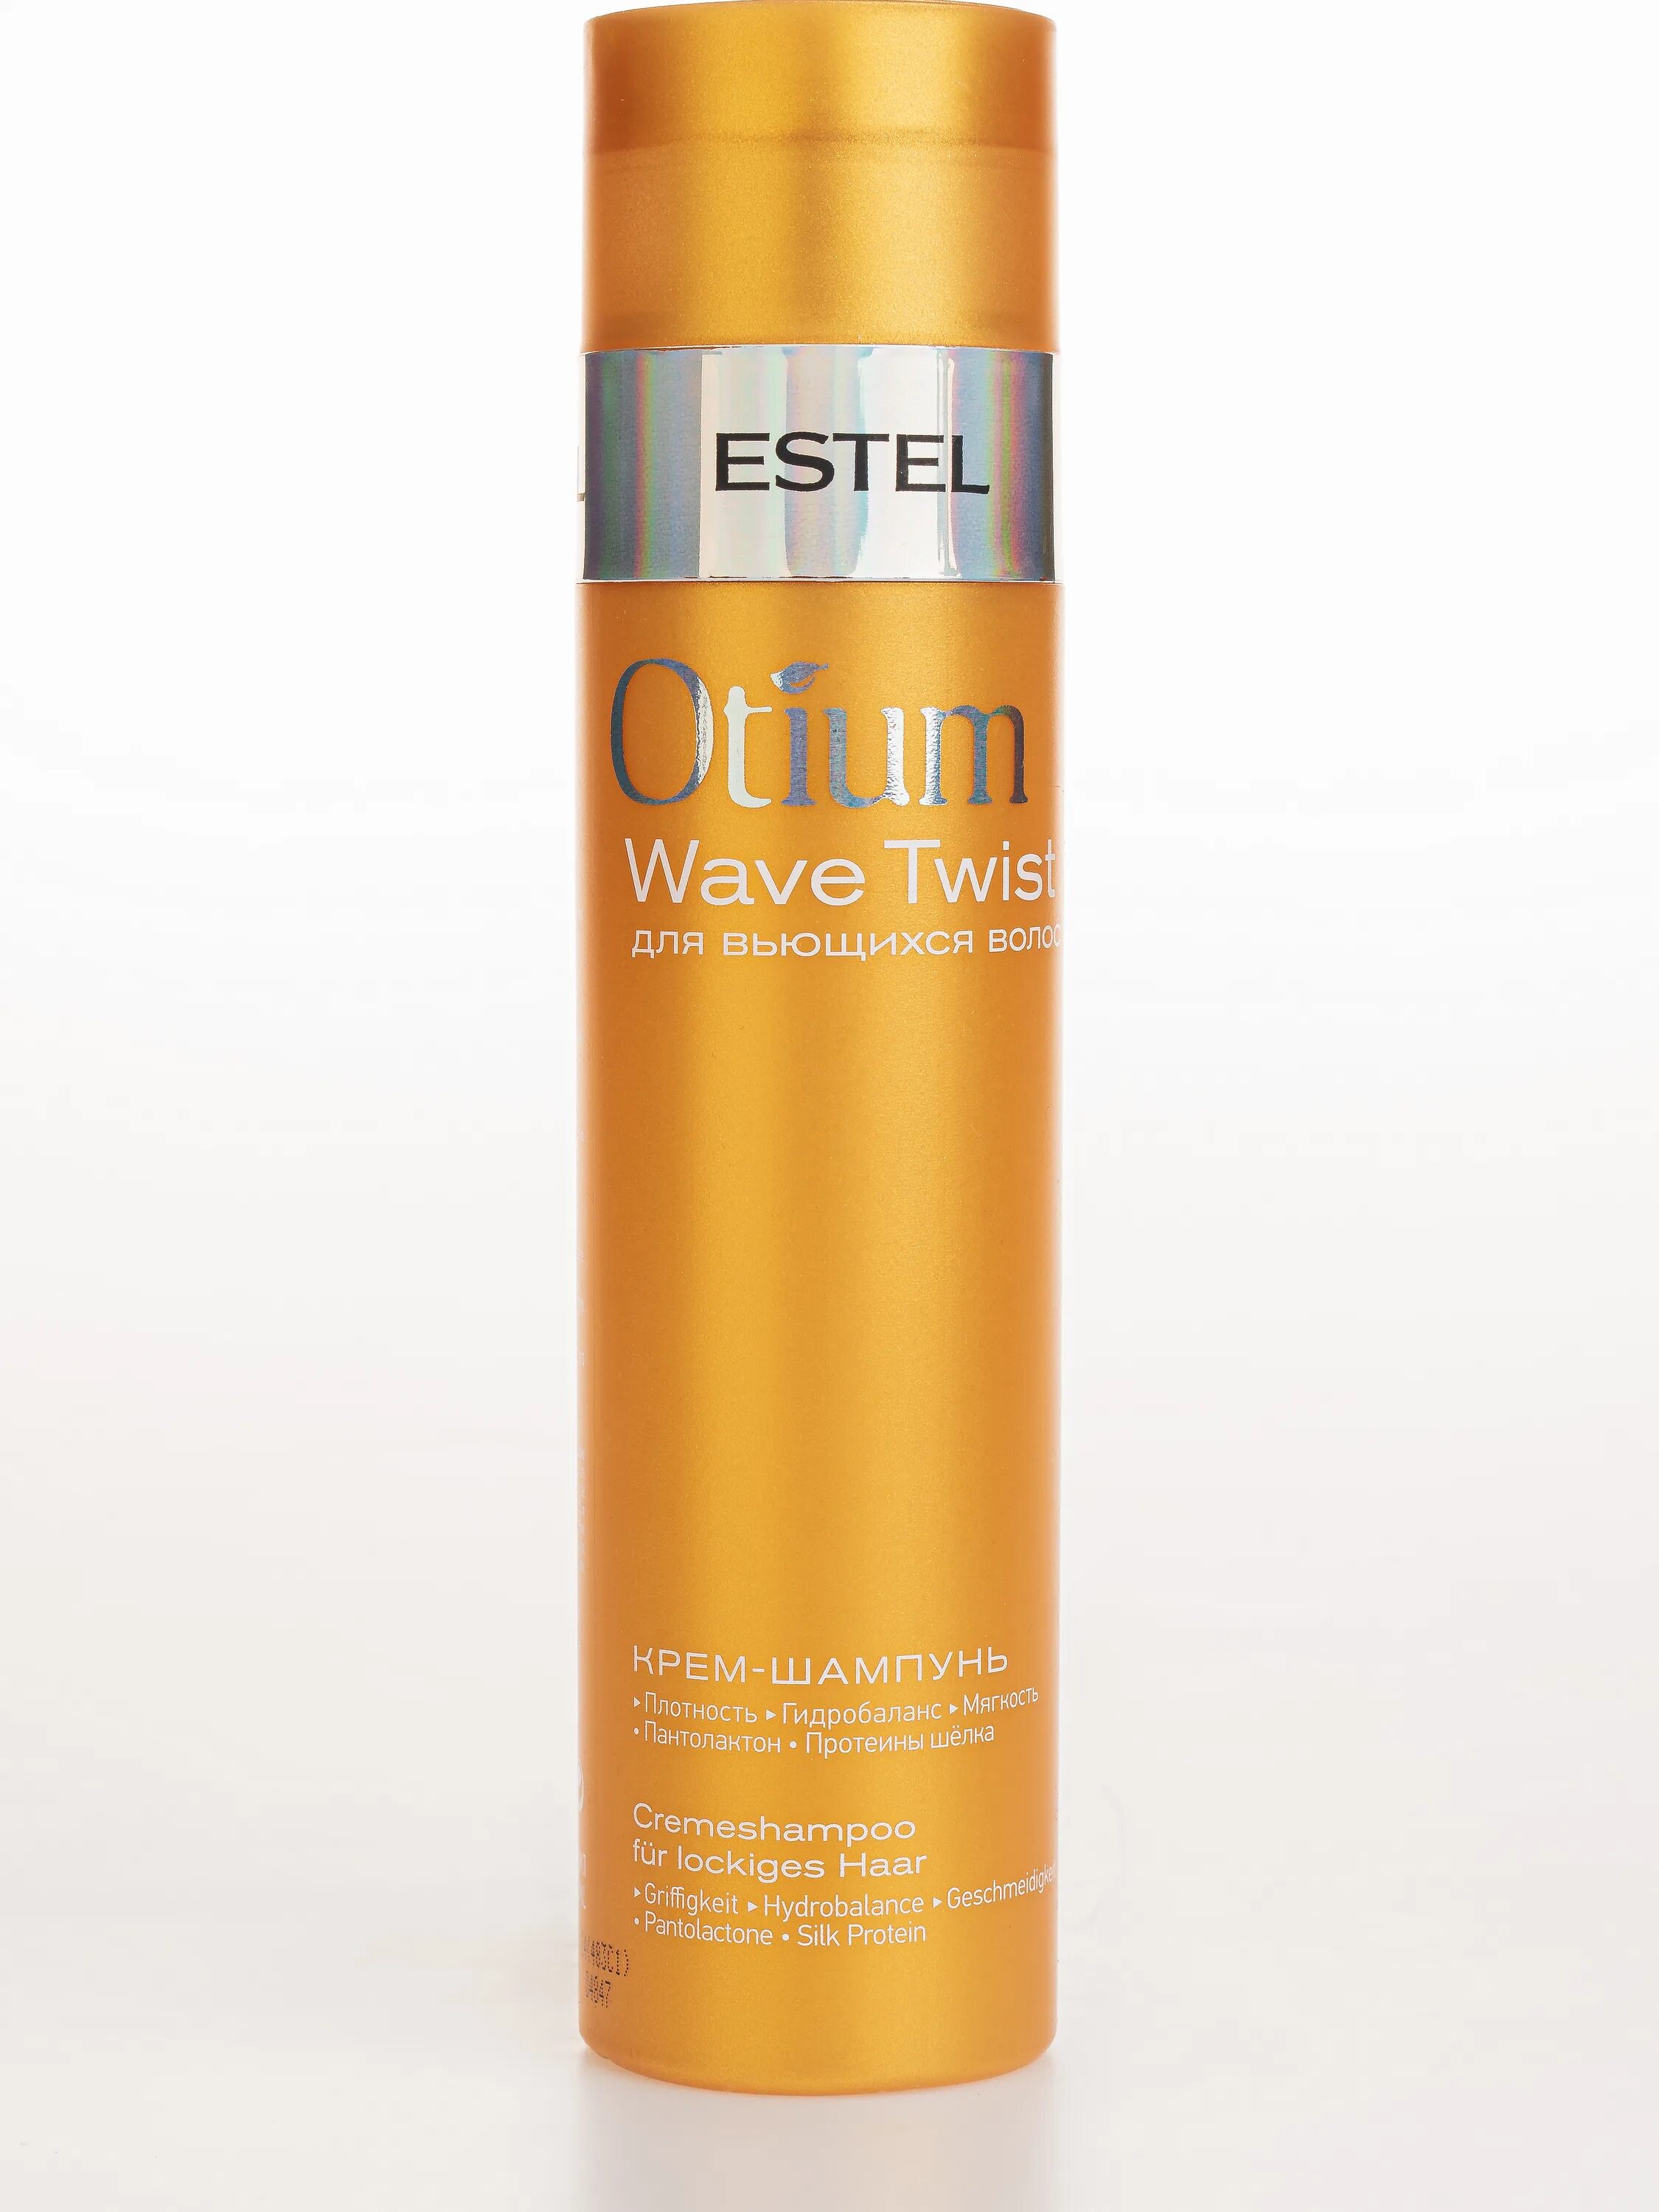 Шампунь Estel Otium Wave Twist для вьющихся волос. Estel крем-шампунь Otium Wave Twist. Estel Otium Wave Twist крем-шампунь для вьющихся волос 250 мл. Estel Otium Wave Twist крем шампунь для вьющихся.